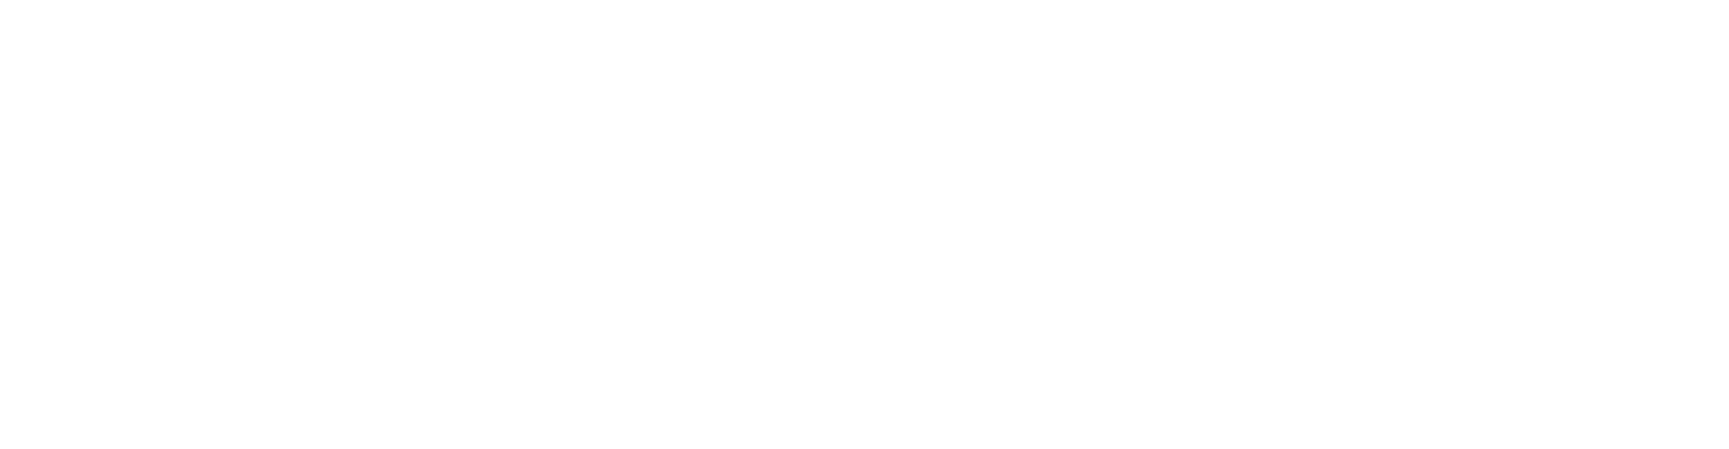 Parexel Logo